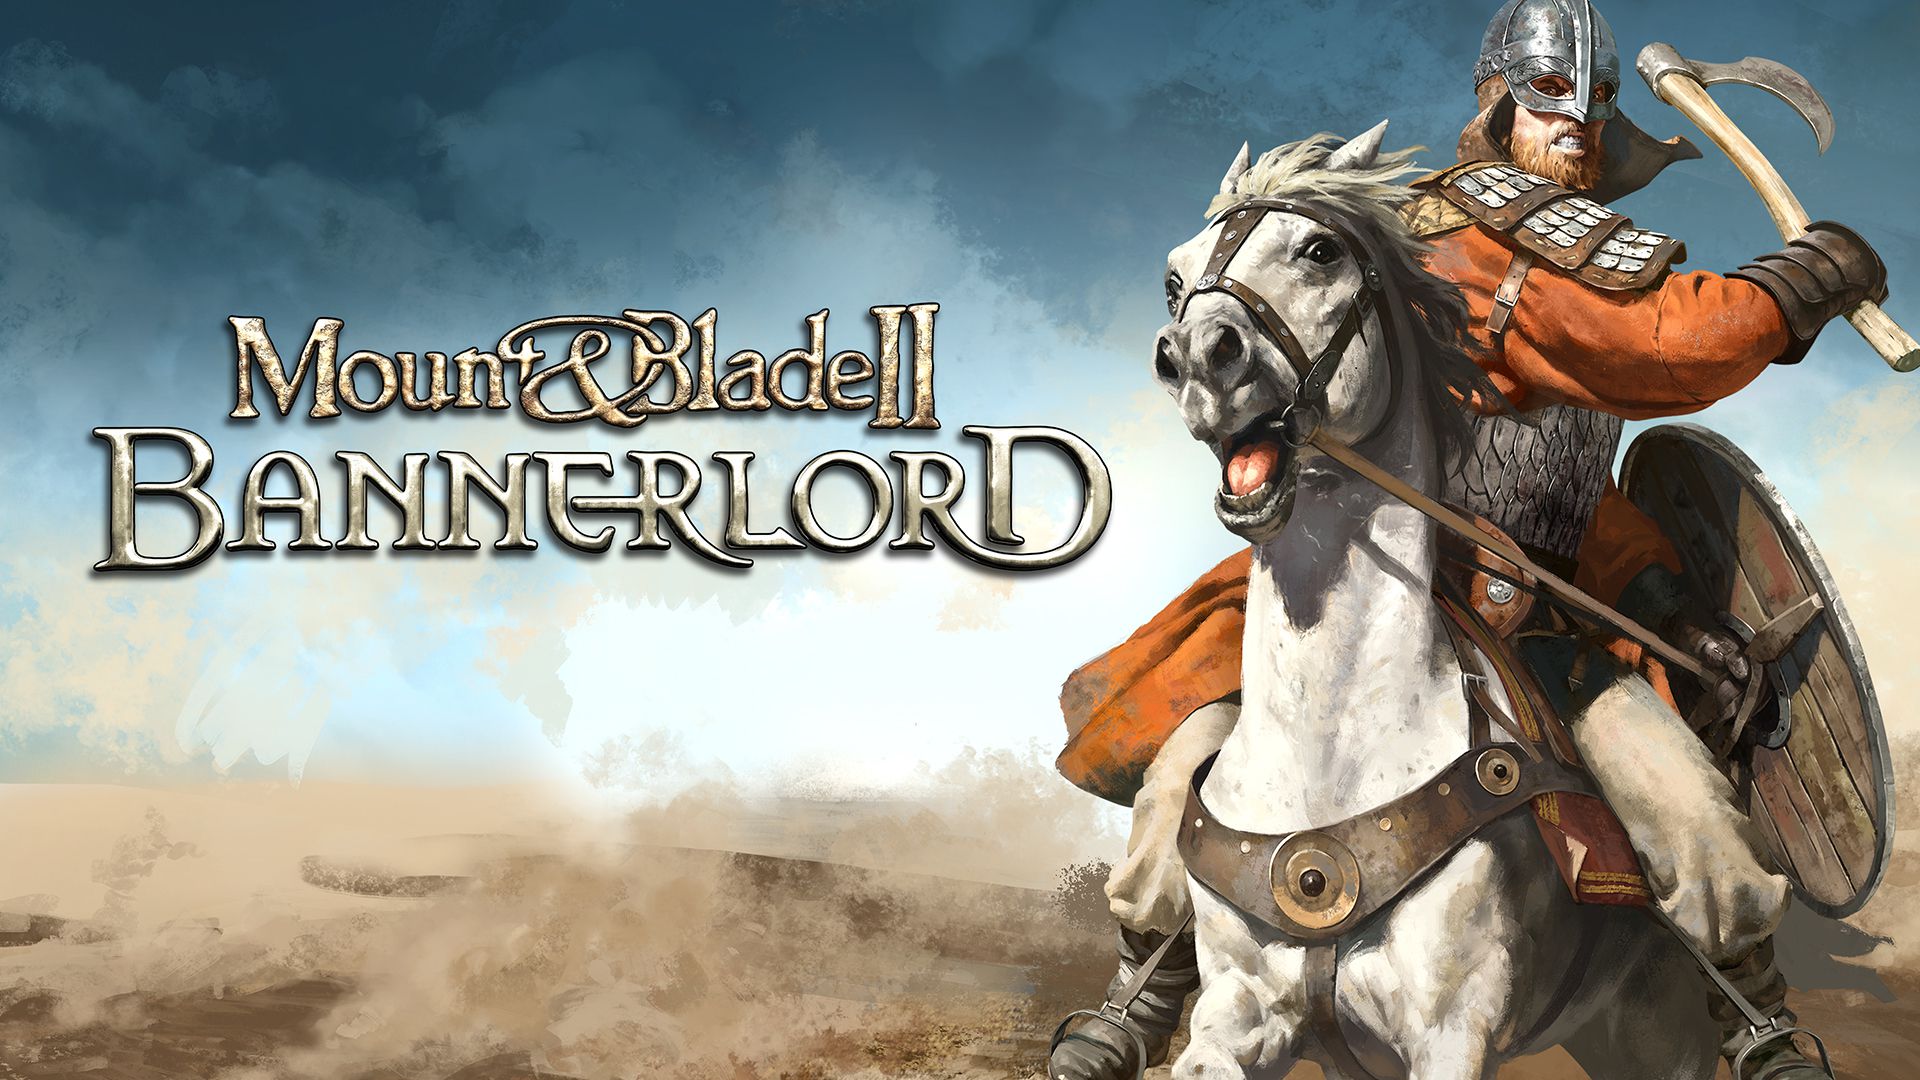 Mount & Blade II - Bannerlord